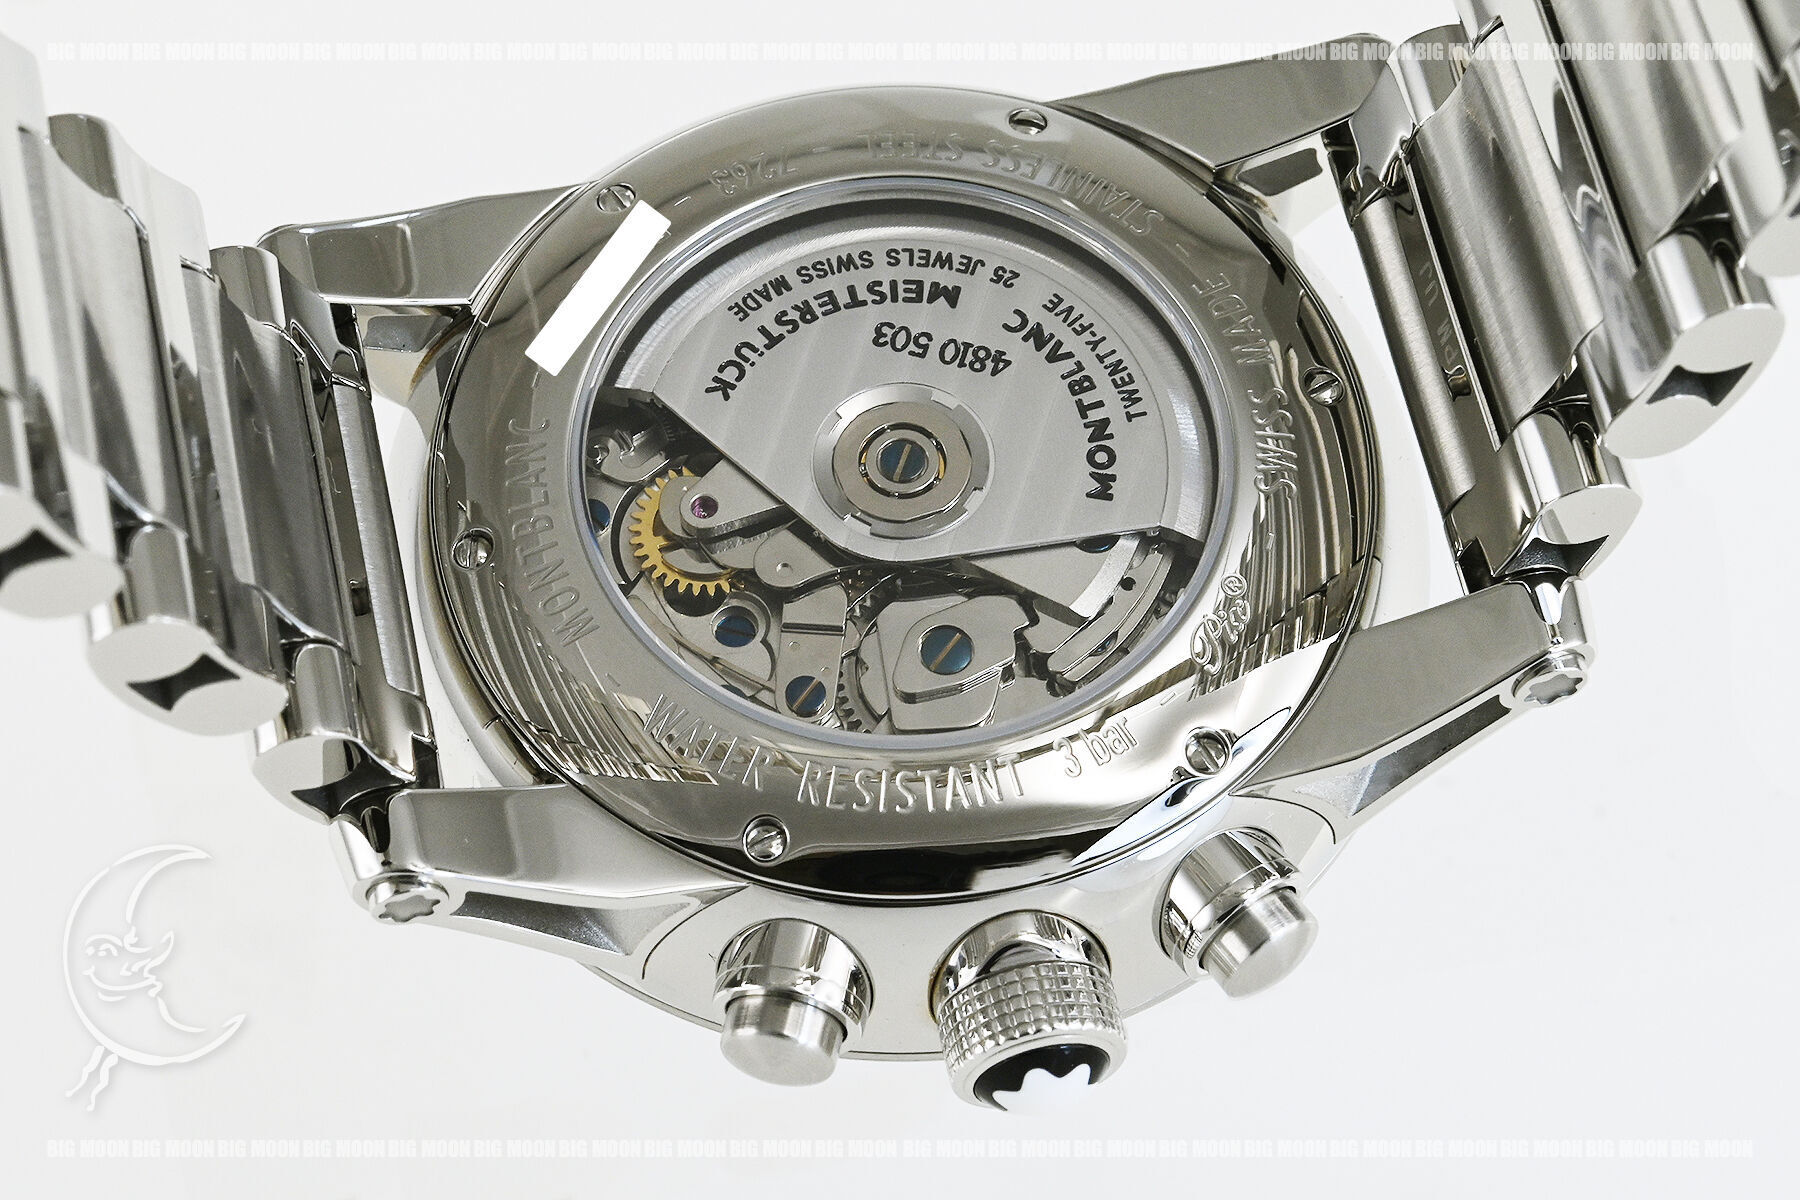 MONTBLANCのタイムウォーカー クロノボイジャー UTC「107303」の販売なら名古屋大須の中古時計専門店ビッグムーン